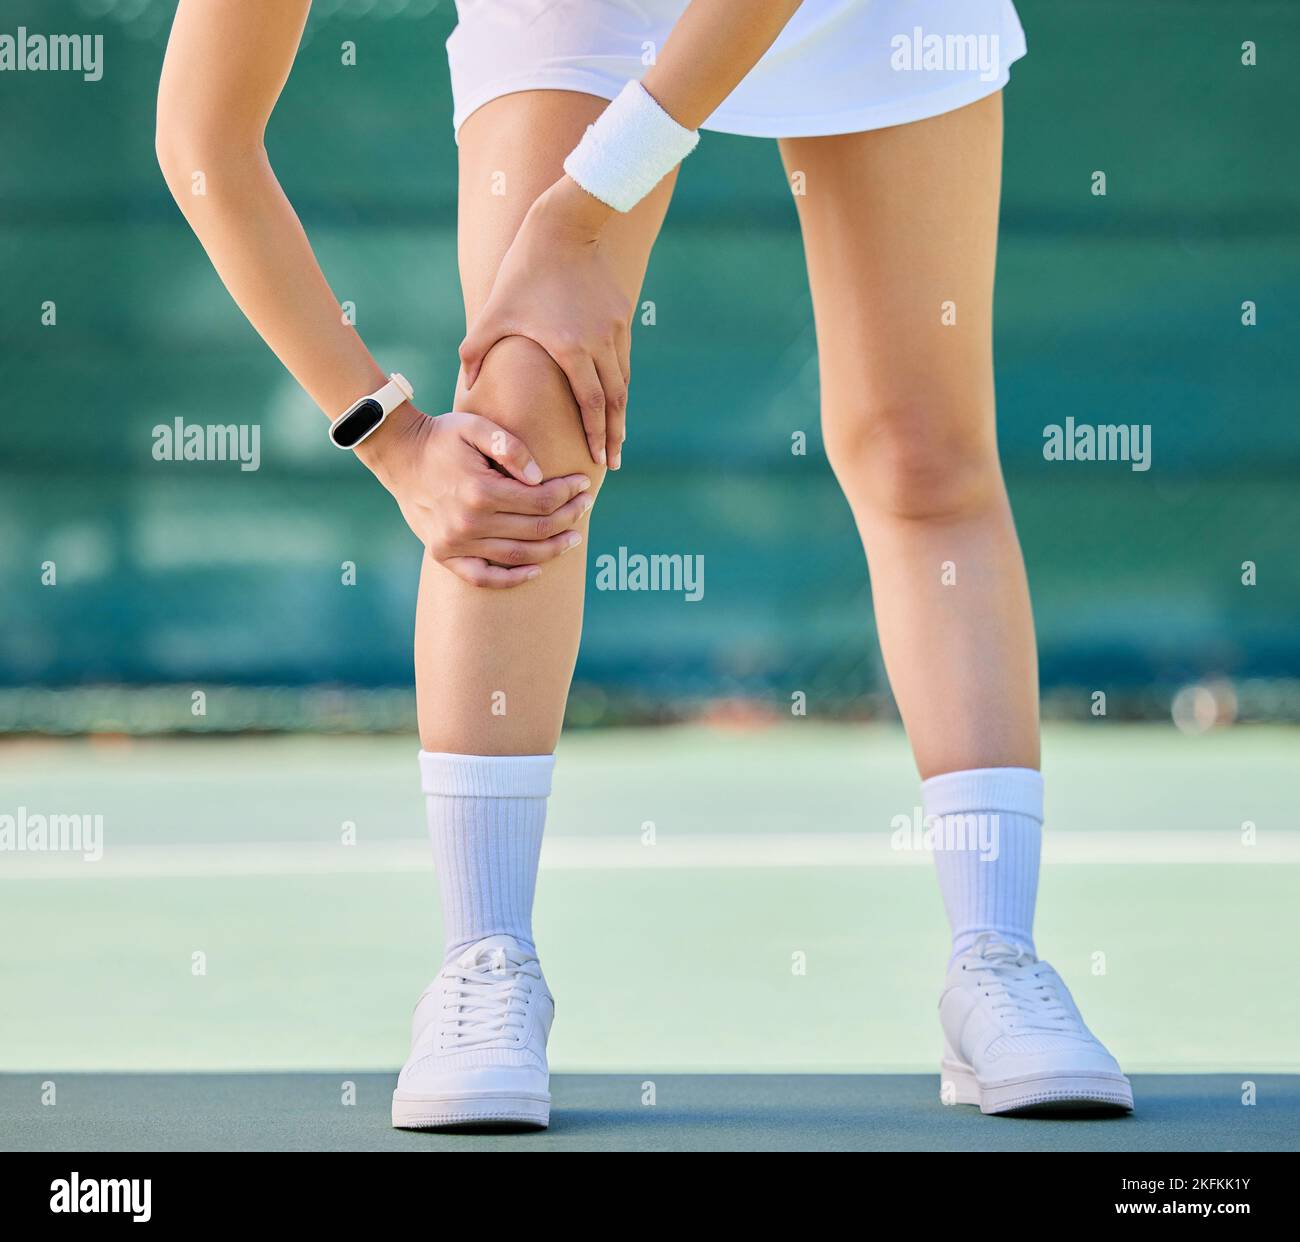 Tennis, Knie und Frau mit Beinverletzungen auf dem Sportplatz für Training, Training oder Turnier. Knieschmerzen, Unfall und verletzte Sportler auf dem Tennisplatz Stockfoto